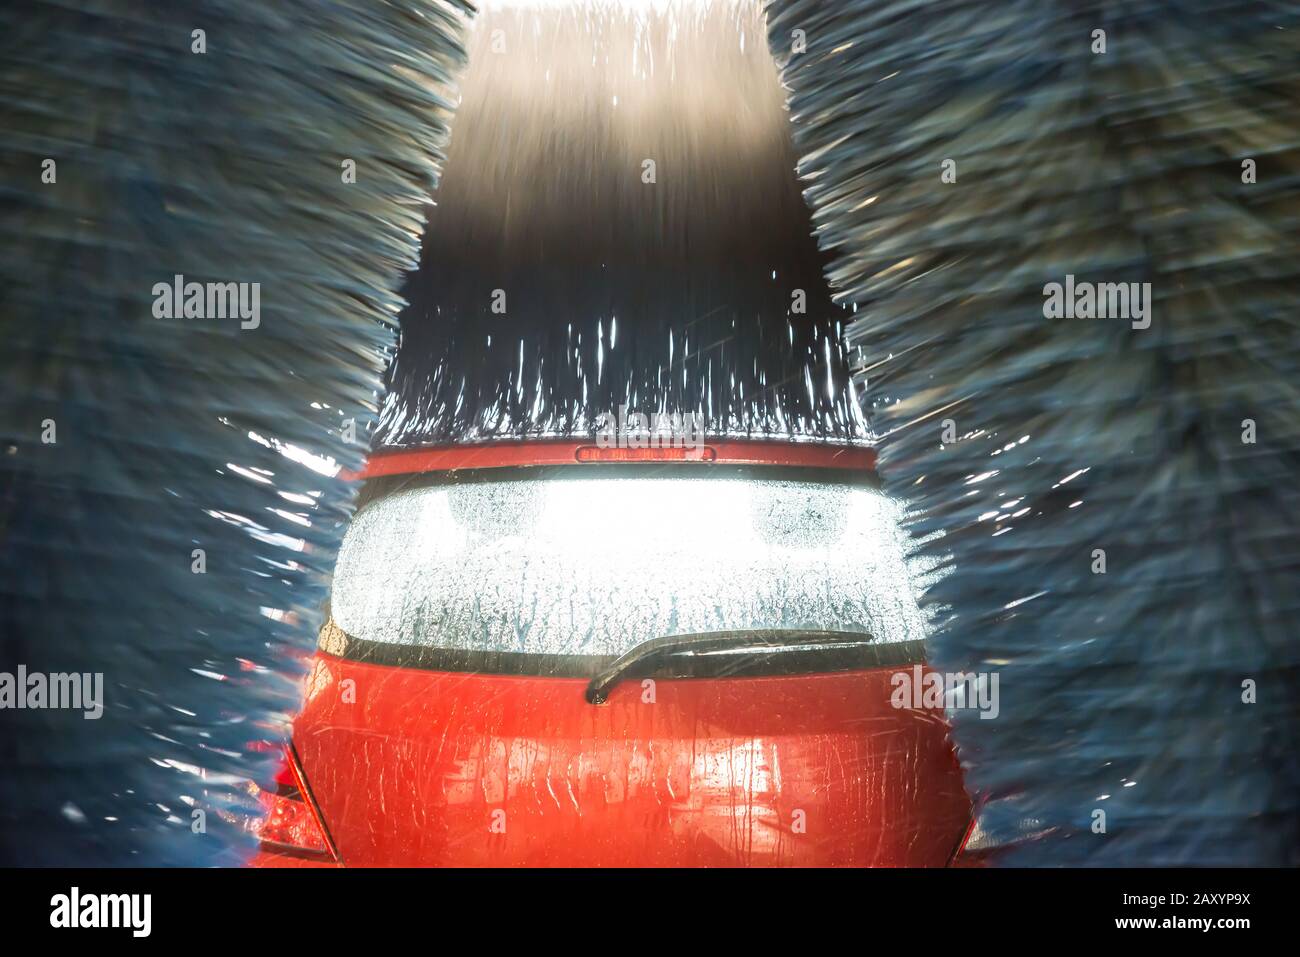 Lavado automático de automóviles con agua en acción Foto de stock